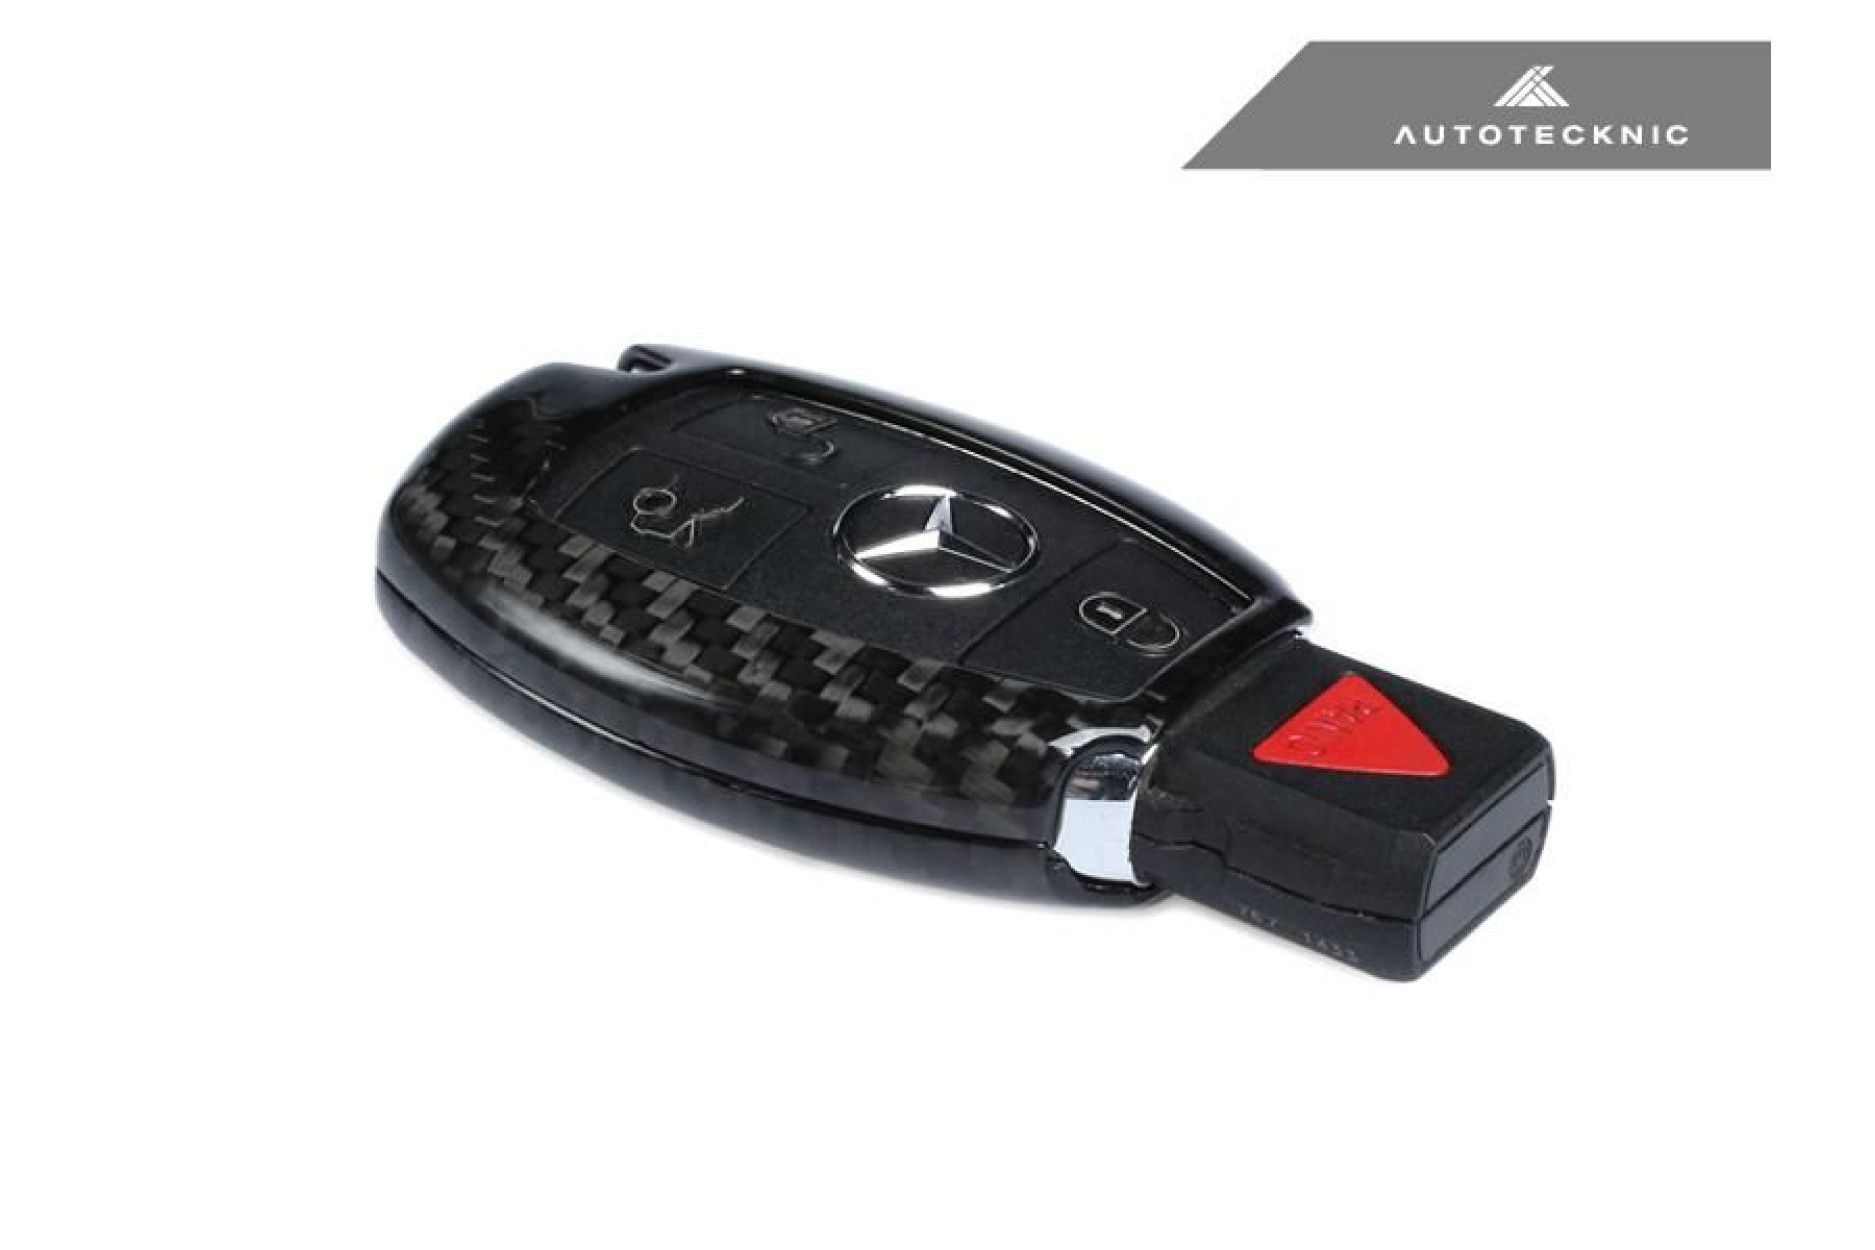 AutoTecknic Dry Carbon Schlüssel Cover für Mercedes-Benz